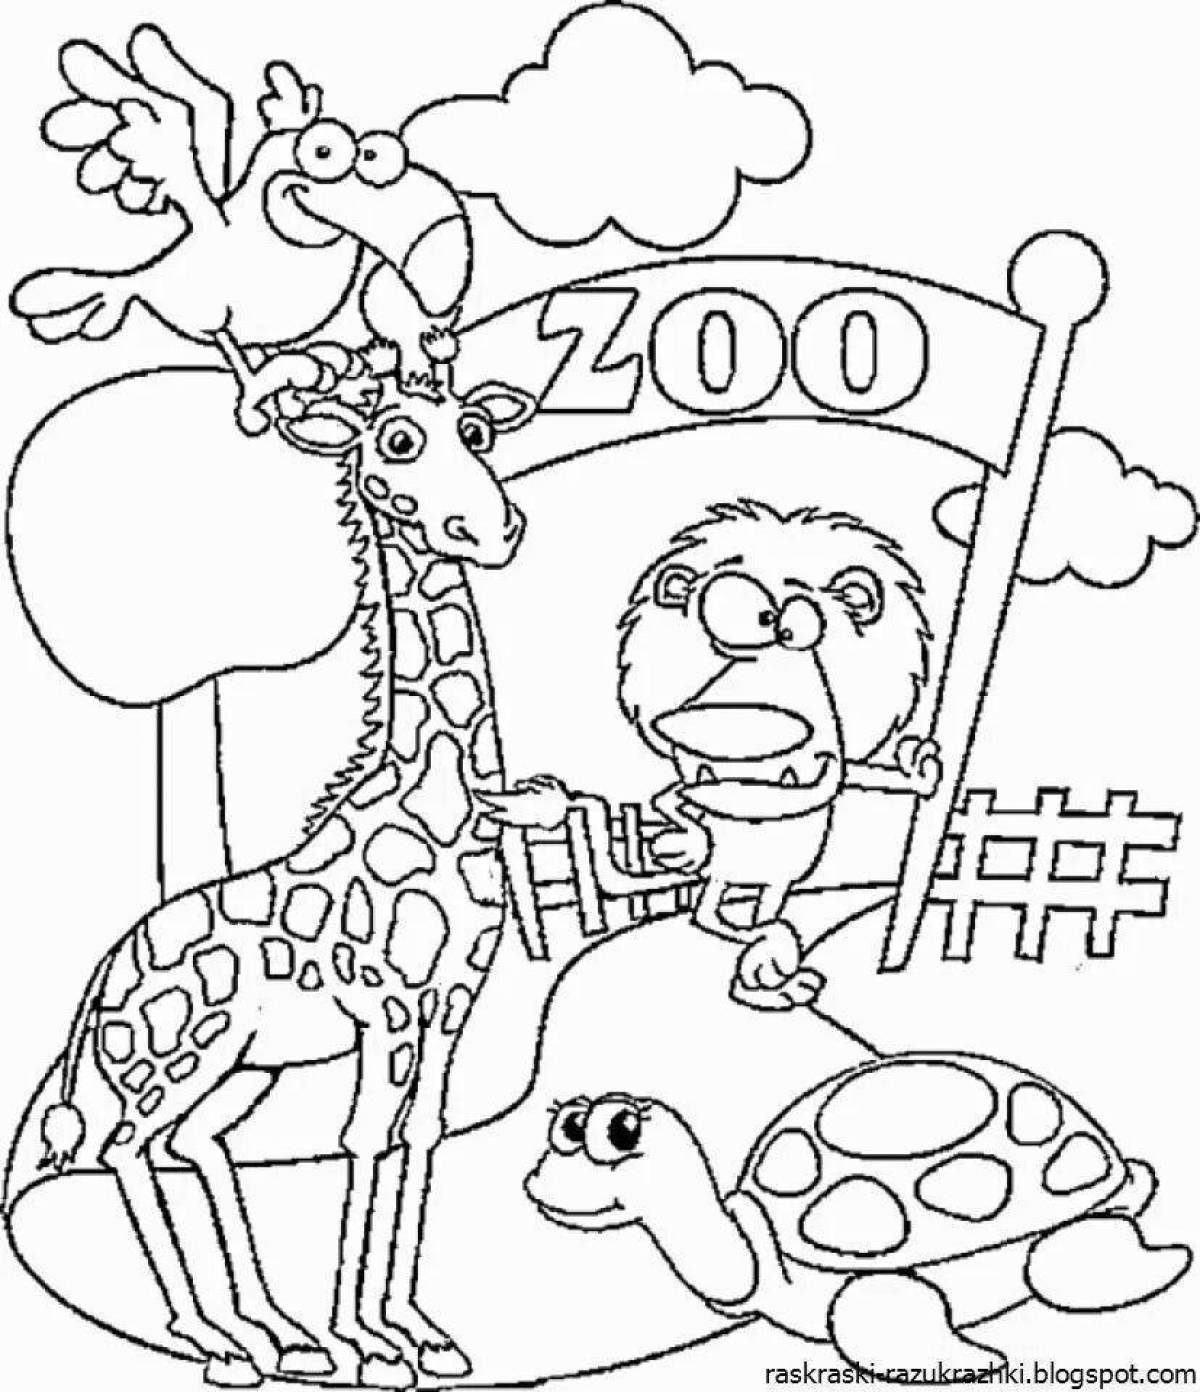 Яркая раскраска зоопарк для детей 5-6 лет